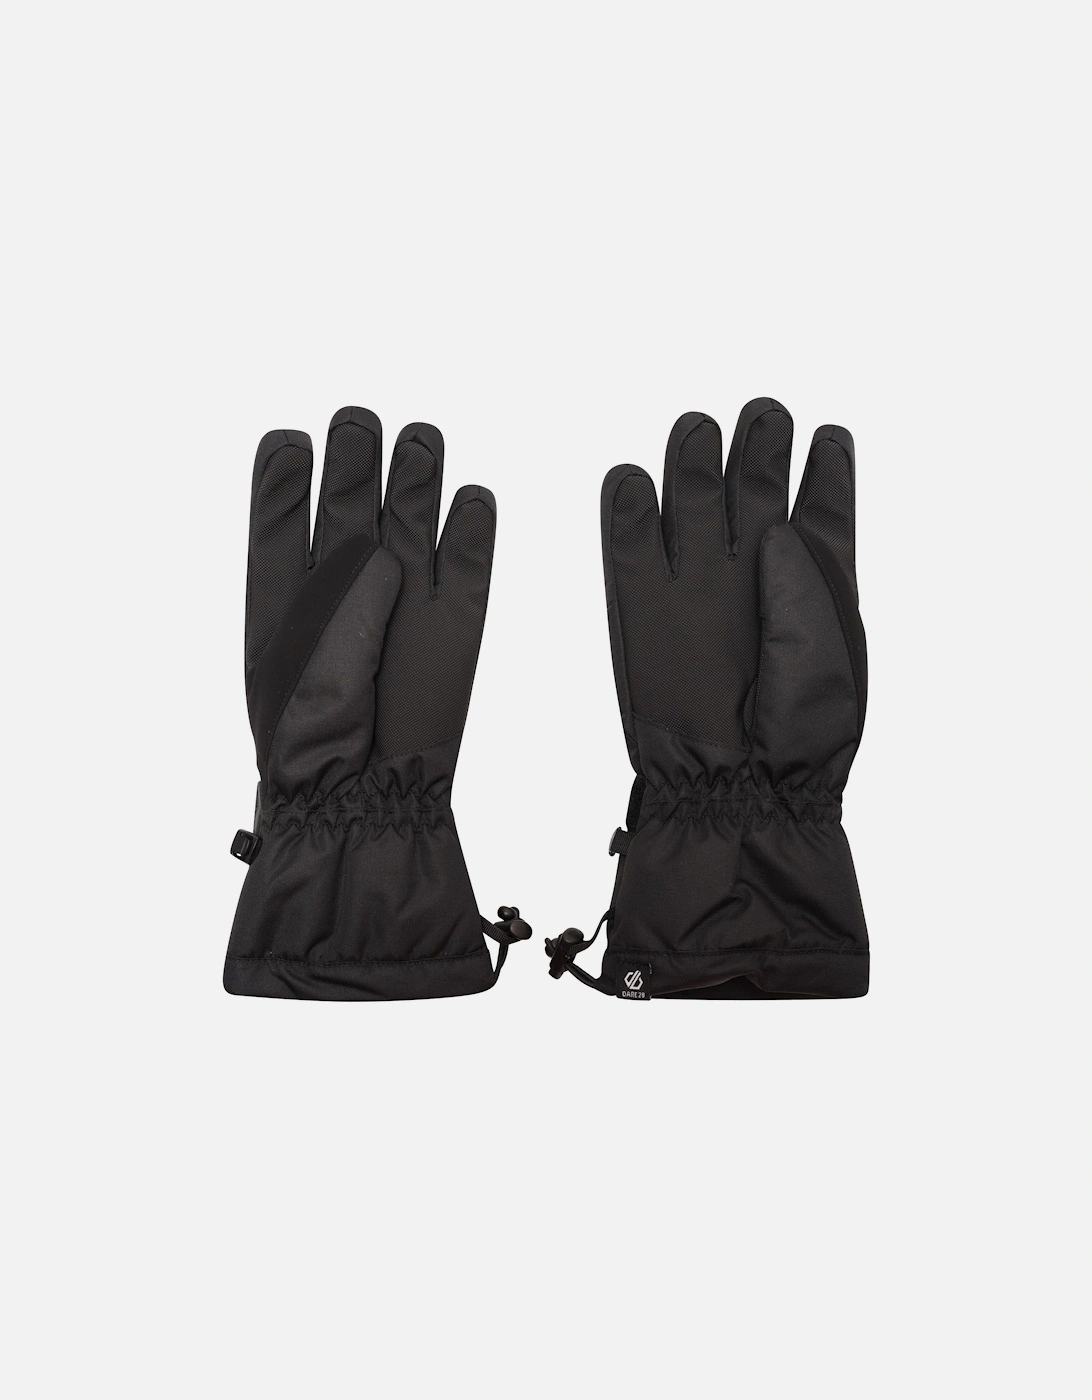 Womens Acute Adjustable Waterproof Ski Gloves - Black